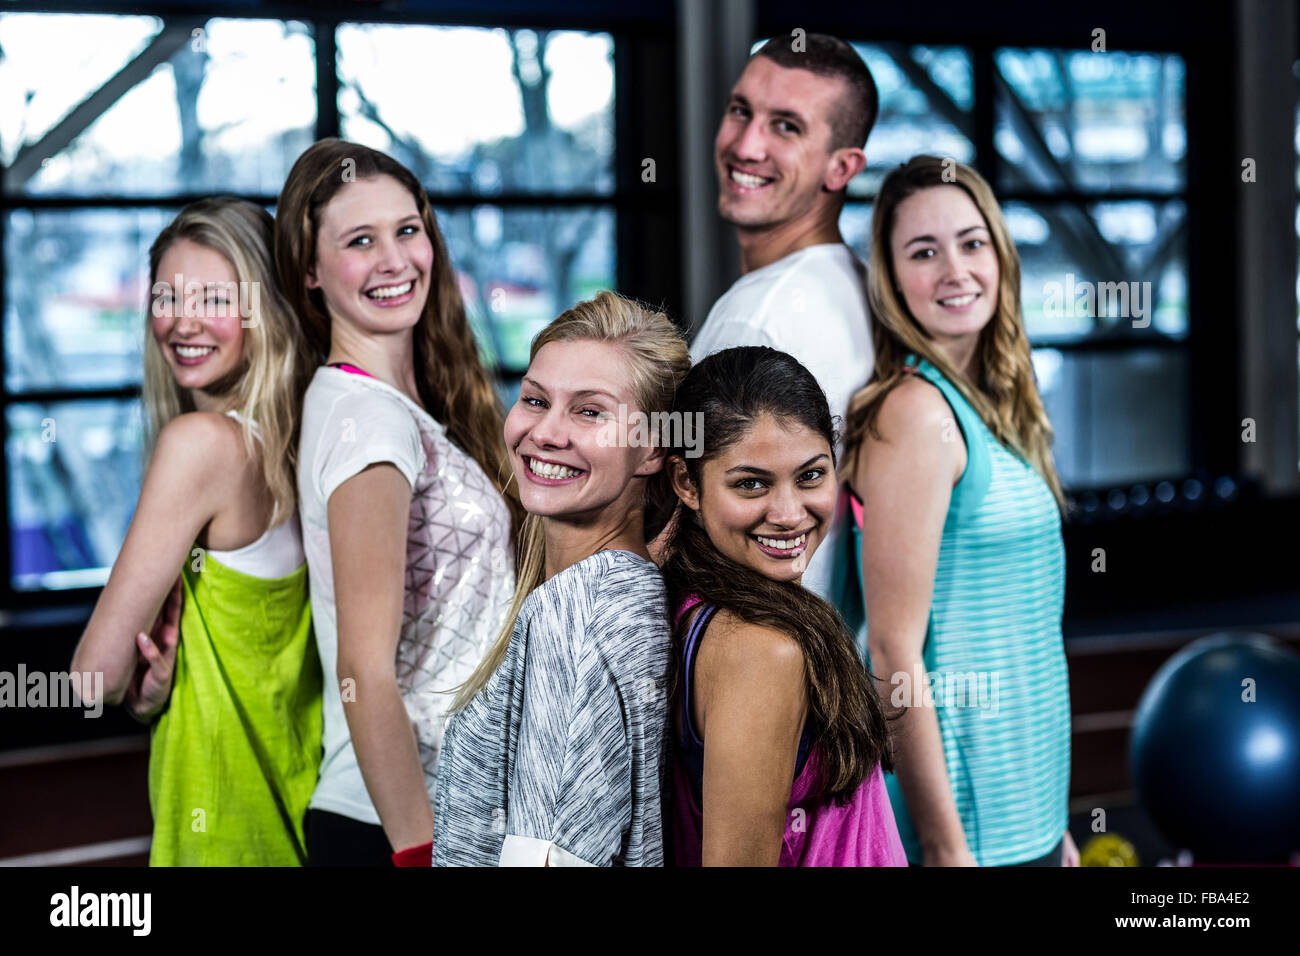 Dancer smiling Group posing together Banque D'Images